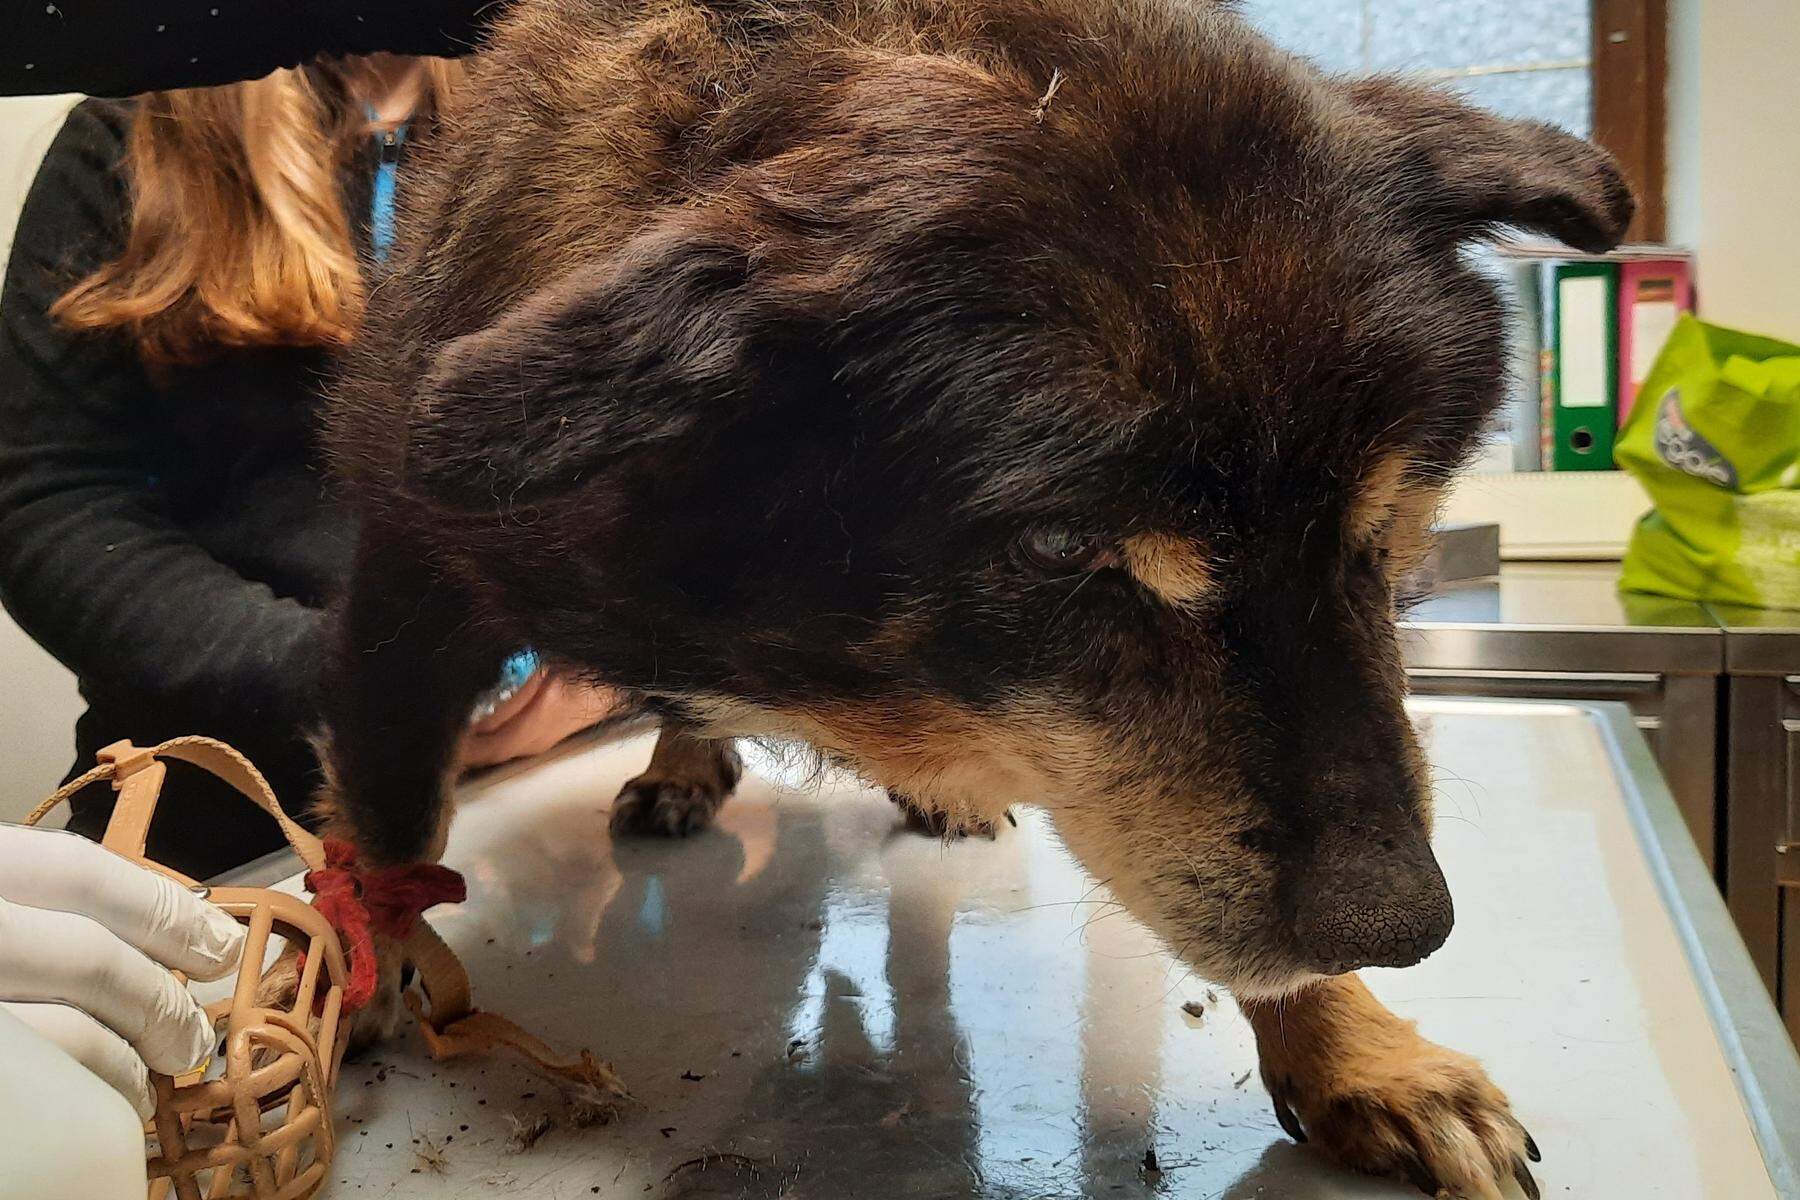 Kranker Hund nicht behandelt | Gericht kritisiert Staatsanwalt, Verfahren wegen Tierquälerei wird fortgesetzt